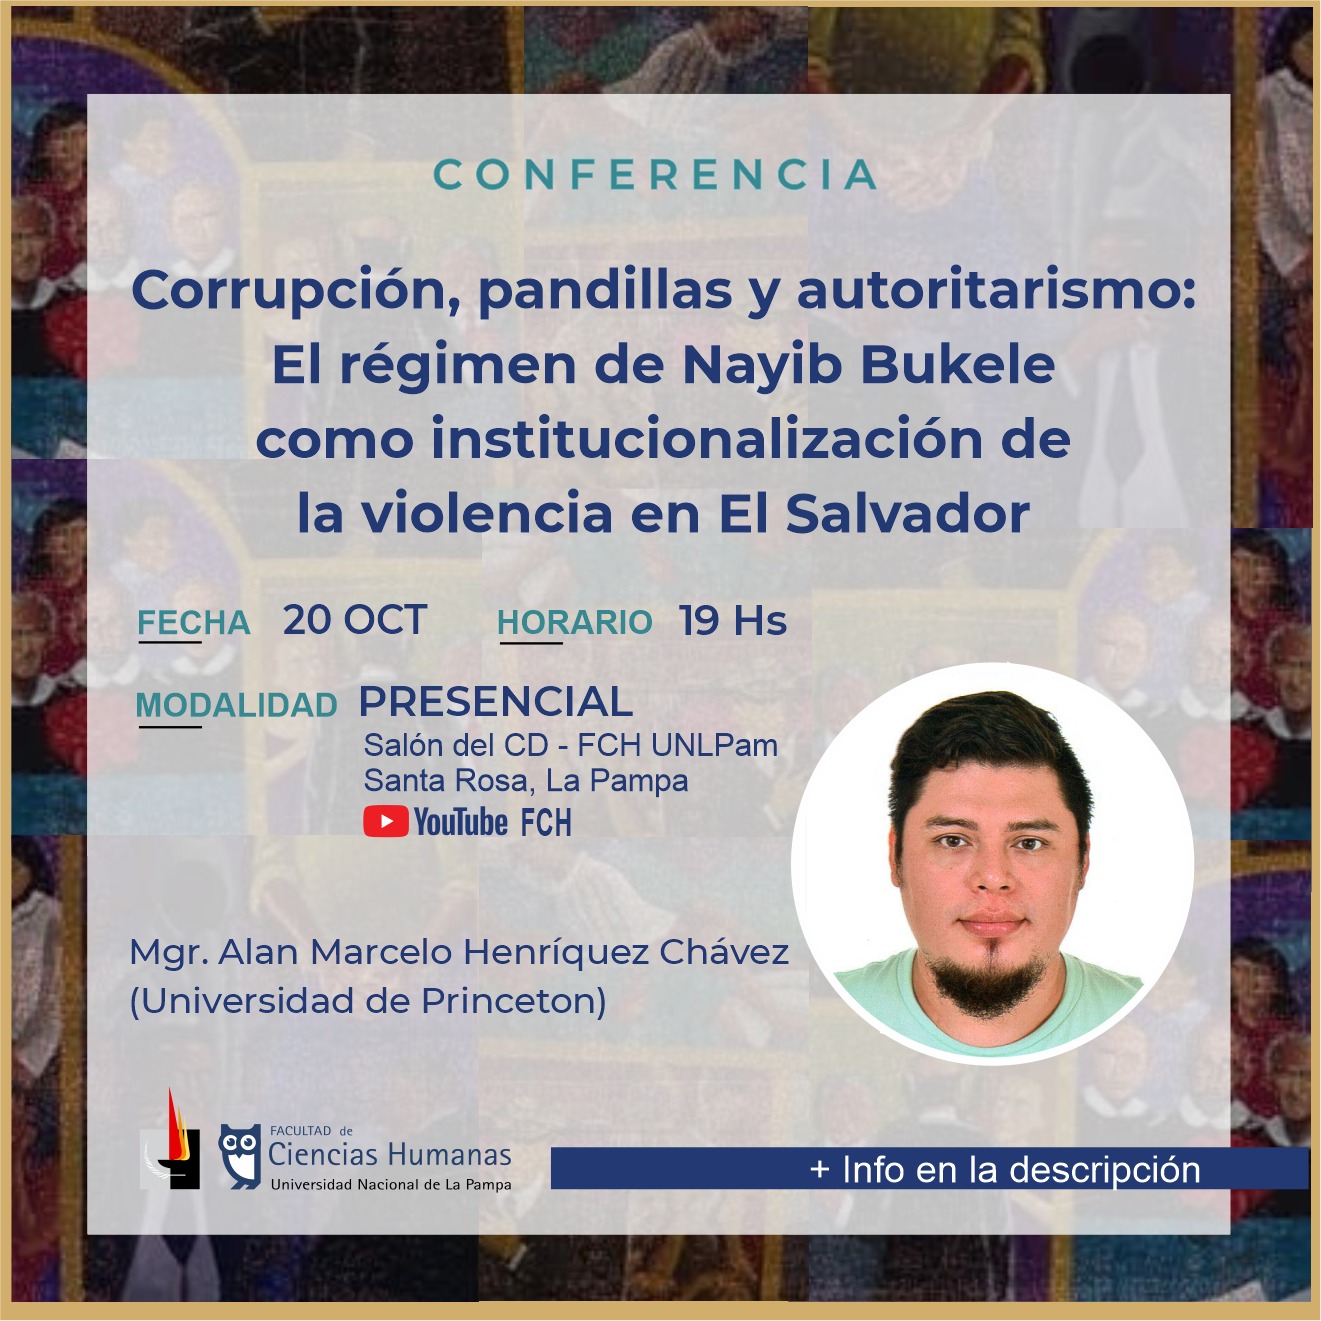 Conferencia: Corrupción, pandillas y autoritarismo: El régimen de Nayib Bukele como institucionalización de la violencia en El Salvador